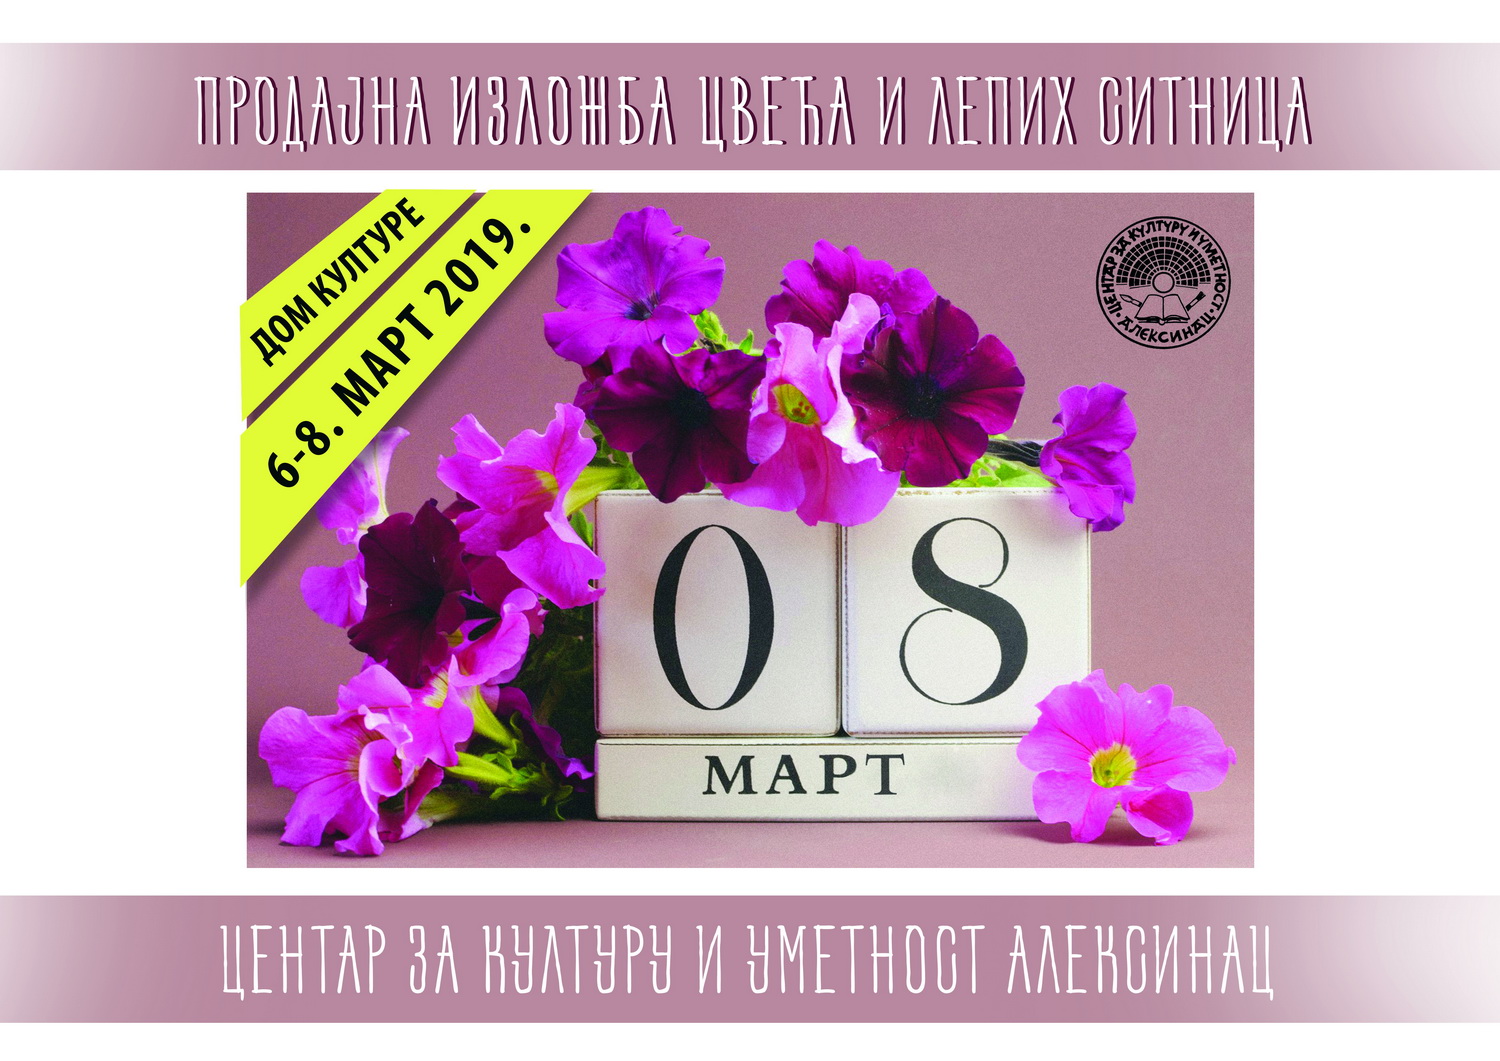 Продајна изложба цвећа и лепих ситница 6-8. март 2019.